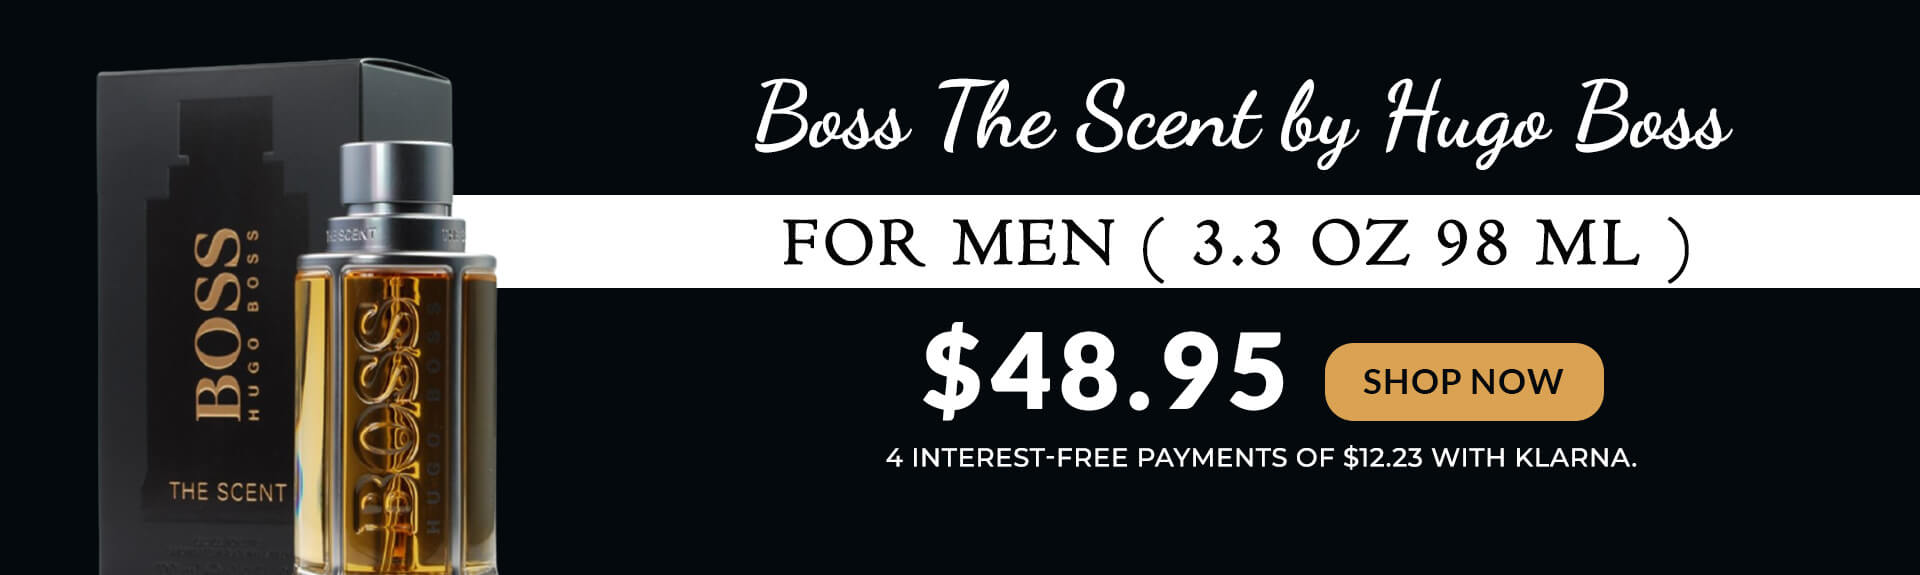 Boss The Scent by Hugo Boss for Men